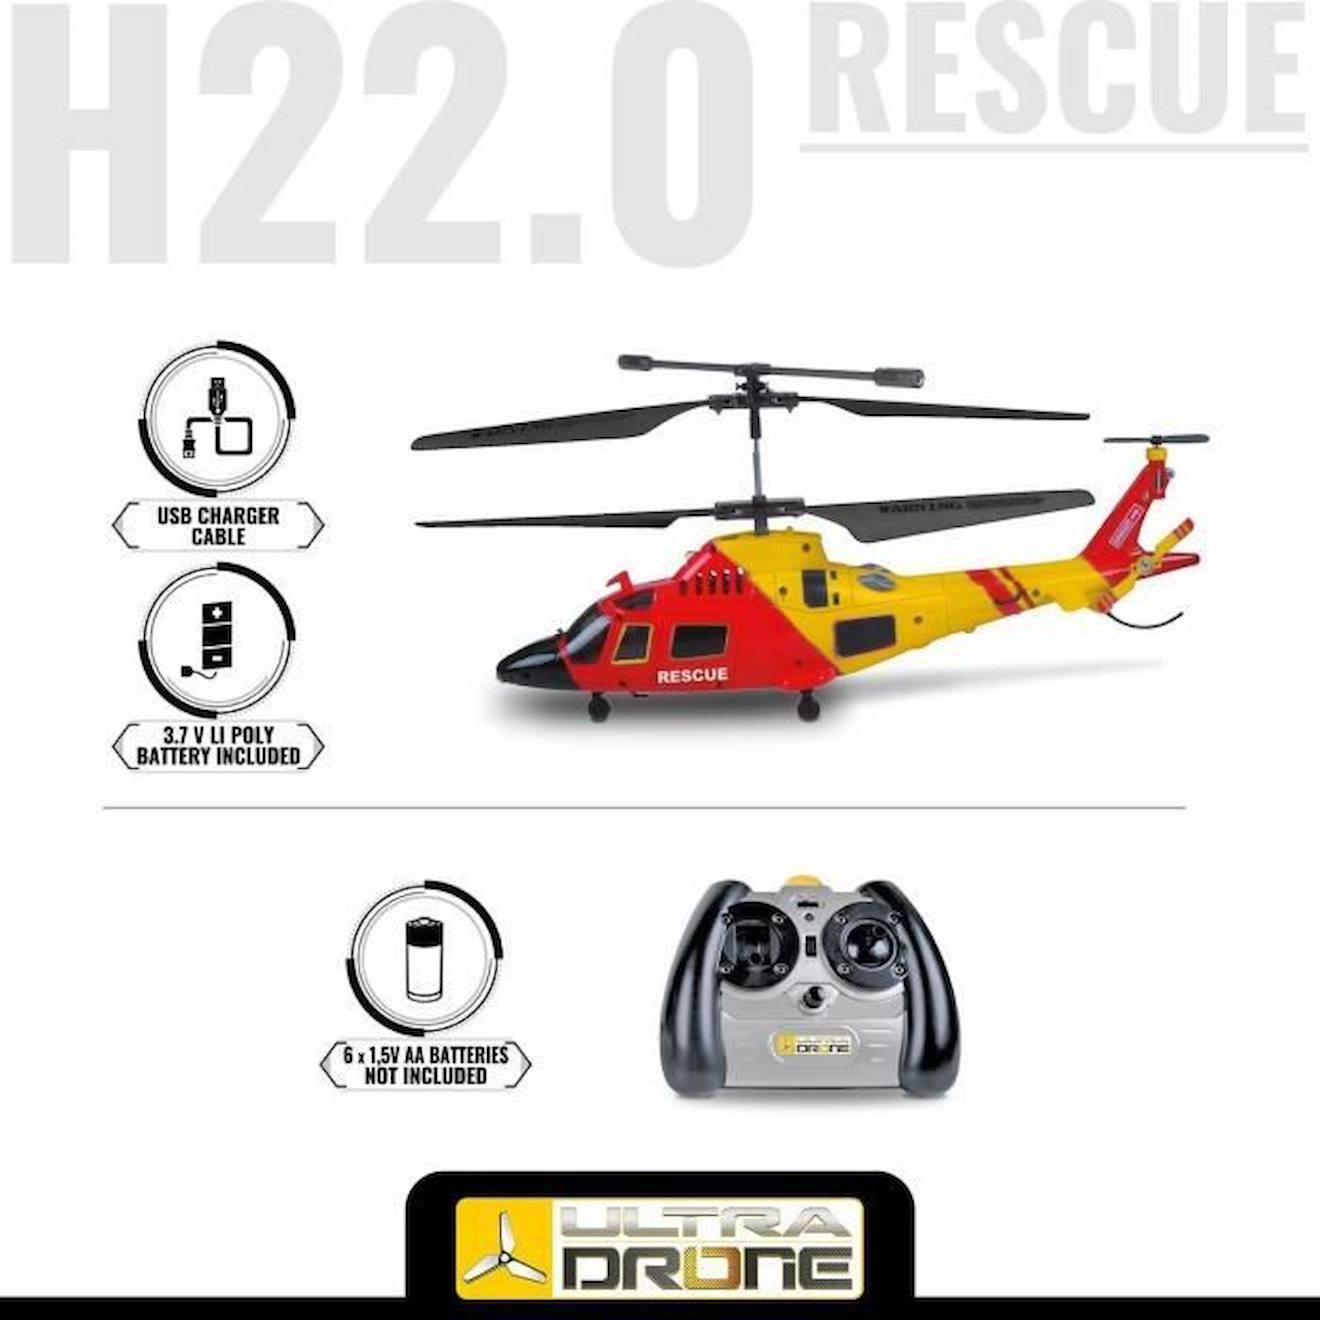 Mondo motors - hélicoptere télécommandé - ultradrone h22 rescue - longueur  22cm MON8001011637119 - Conforama